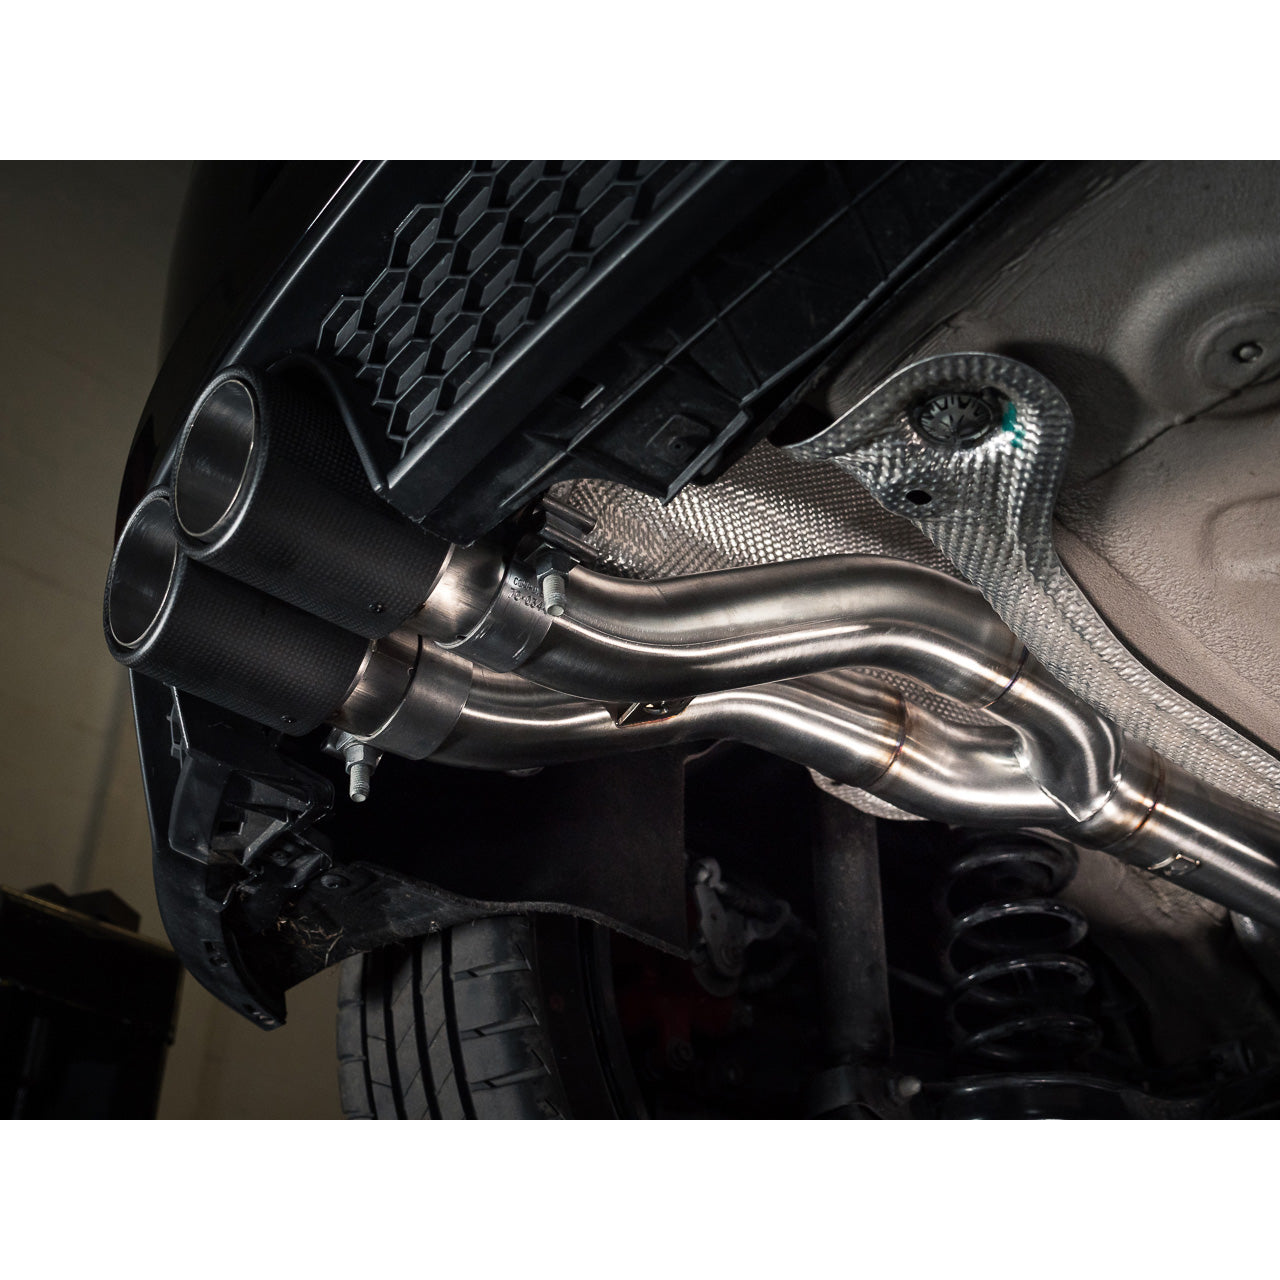 VW Polo GTI (AW) Mk6 2.0 TSI (17-21) Rear Box Delete Race GPF Back Performance Exhaust